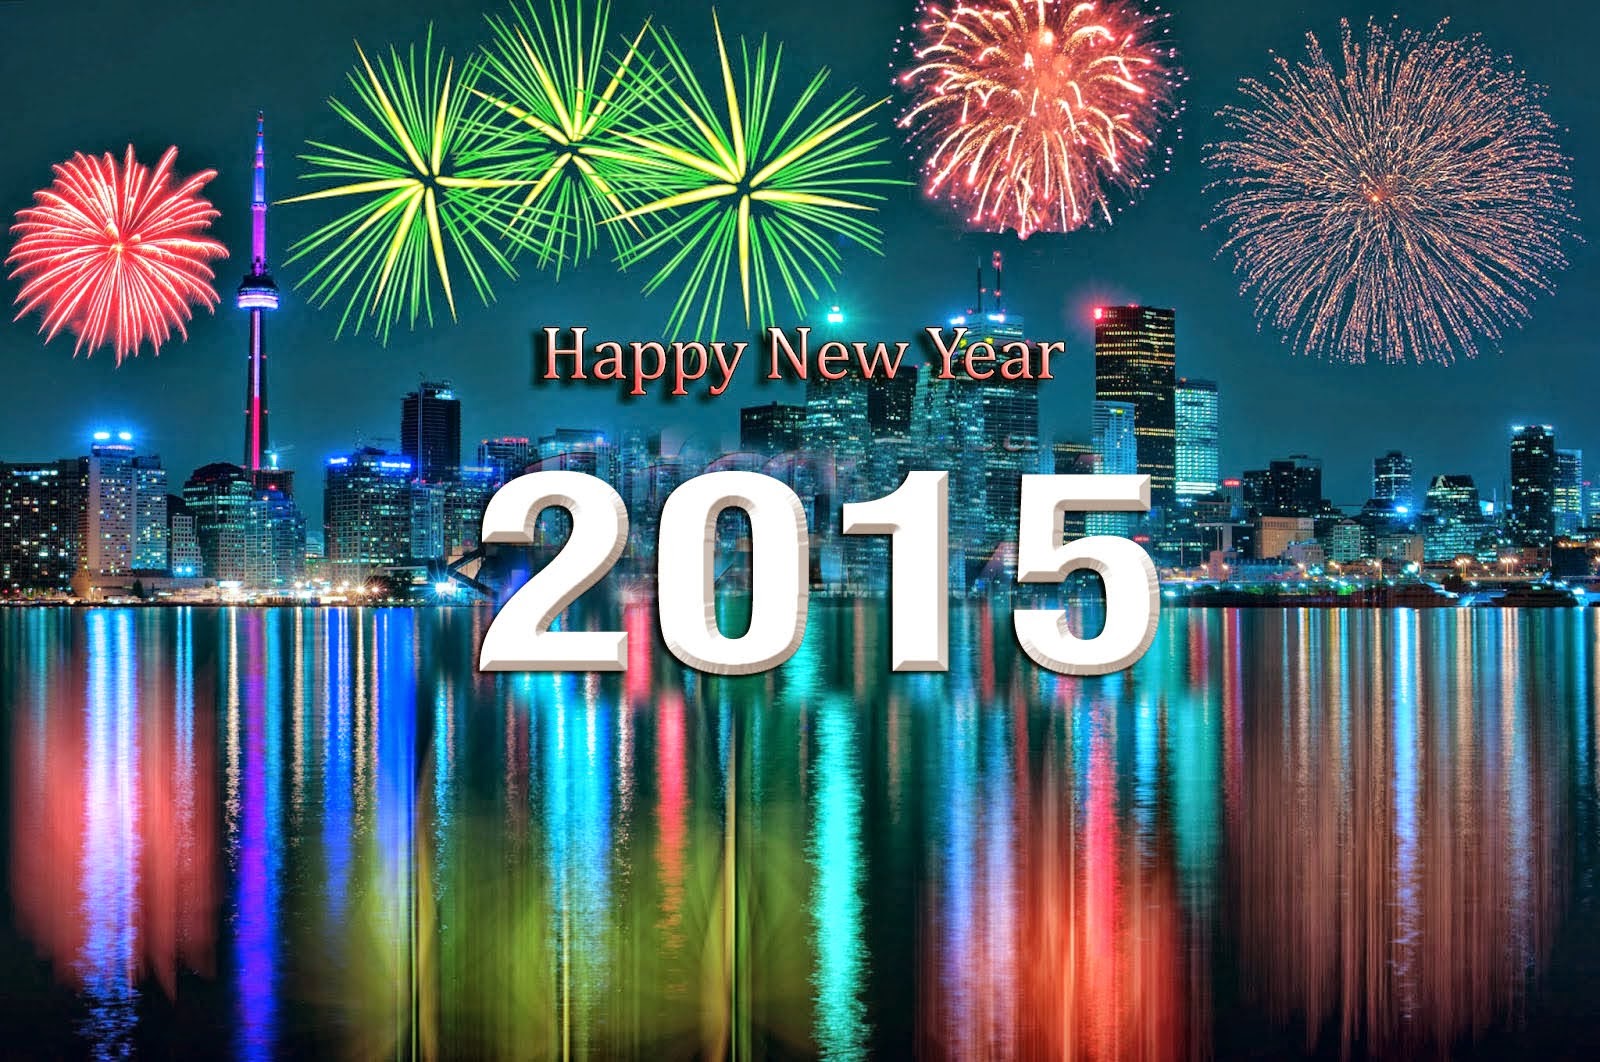 Gambar Ucapan Selamat Tahun Baru 2015 Kata Indah Happy New Year 